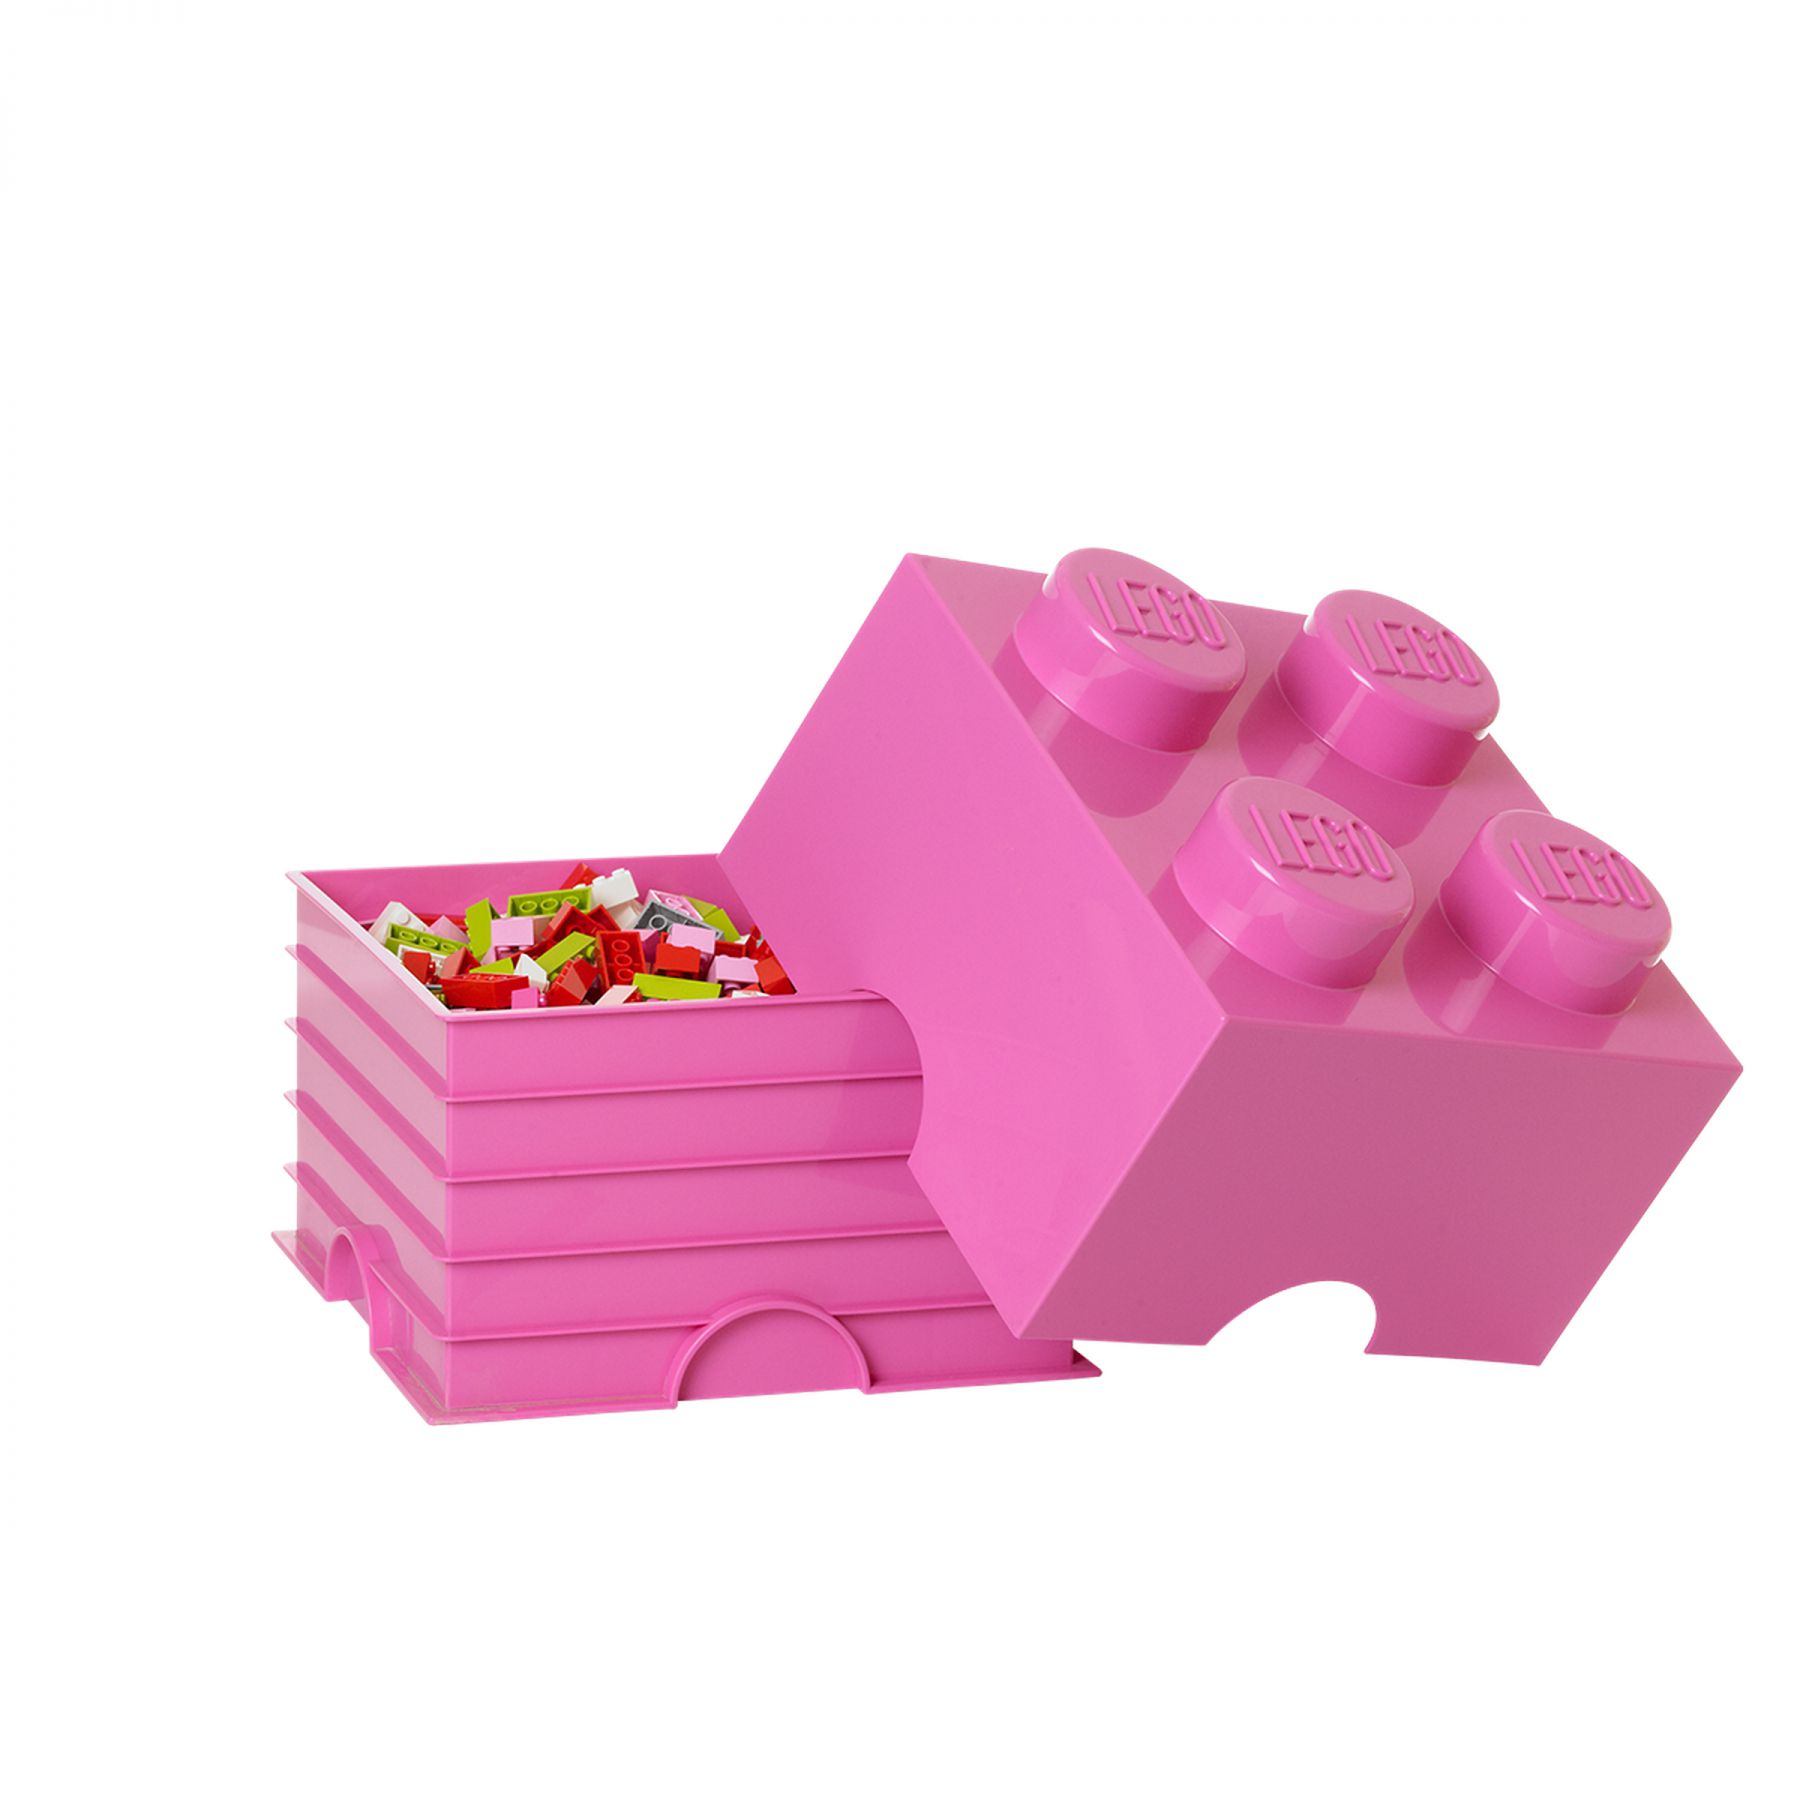 LEGO Gear 5004277 Rosa LEGO® Aufbewahrungsstein mit 4 Noppen LEGO_5004277_alt1.jpg